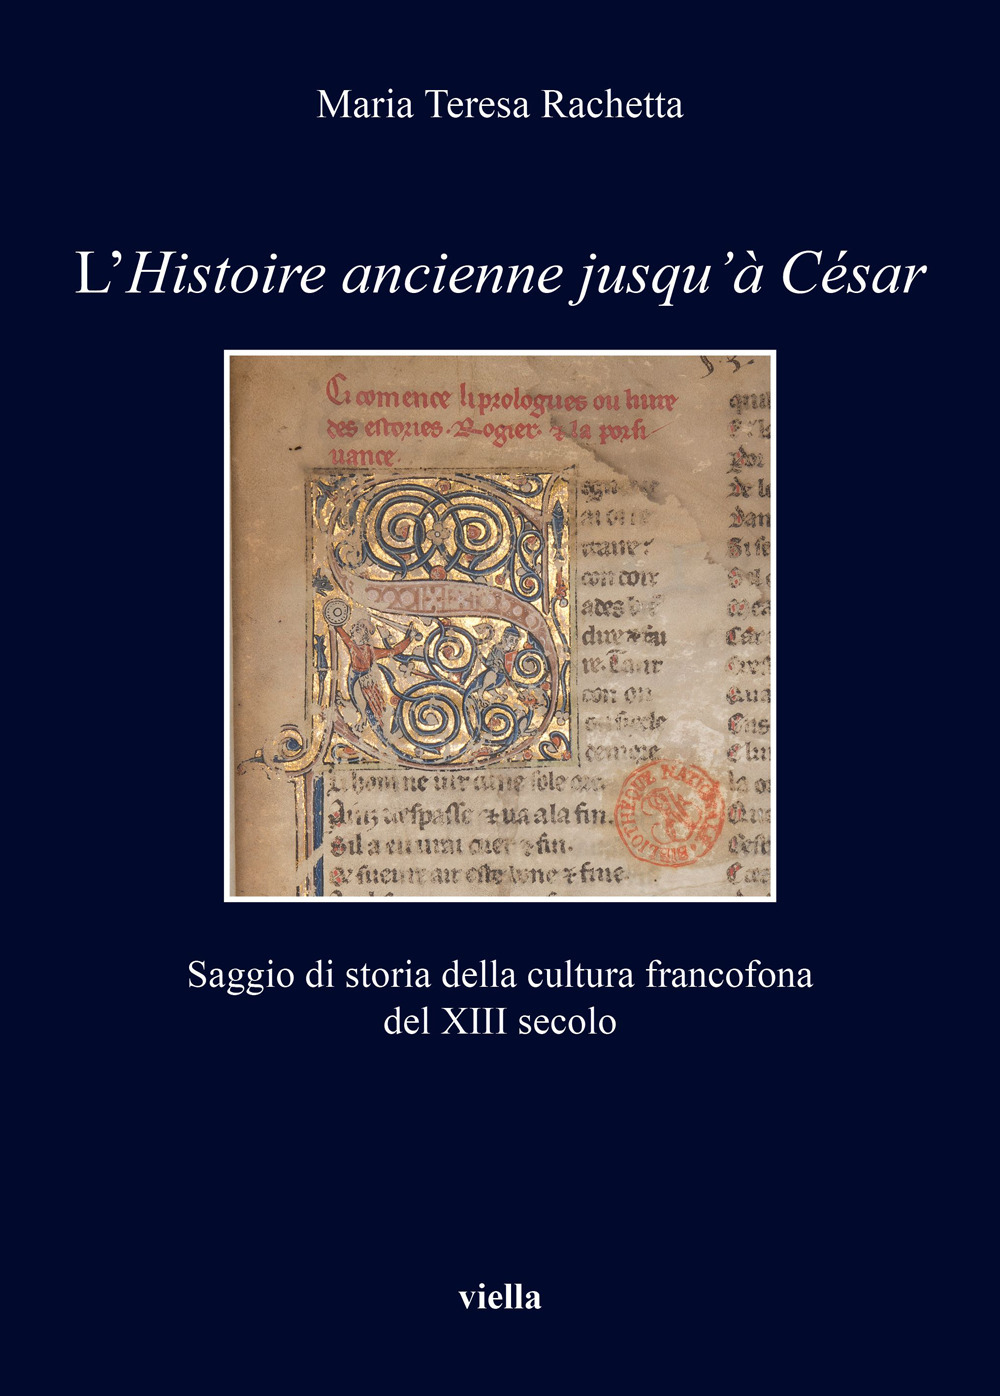 L'«Histoire ancienne jusqu'à César». Saggio di storia della cultura francofona del XIII secolo